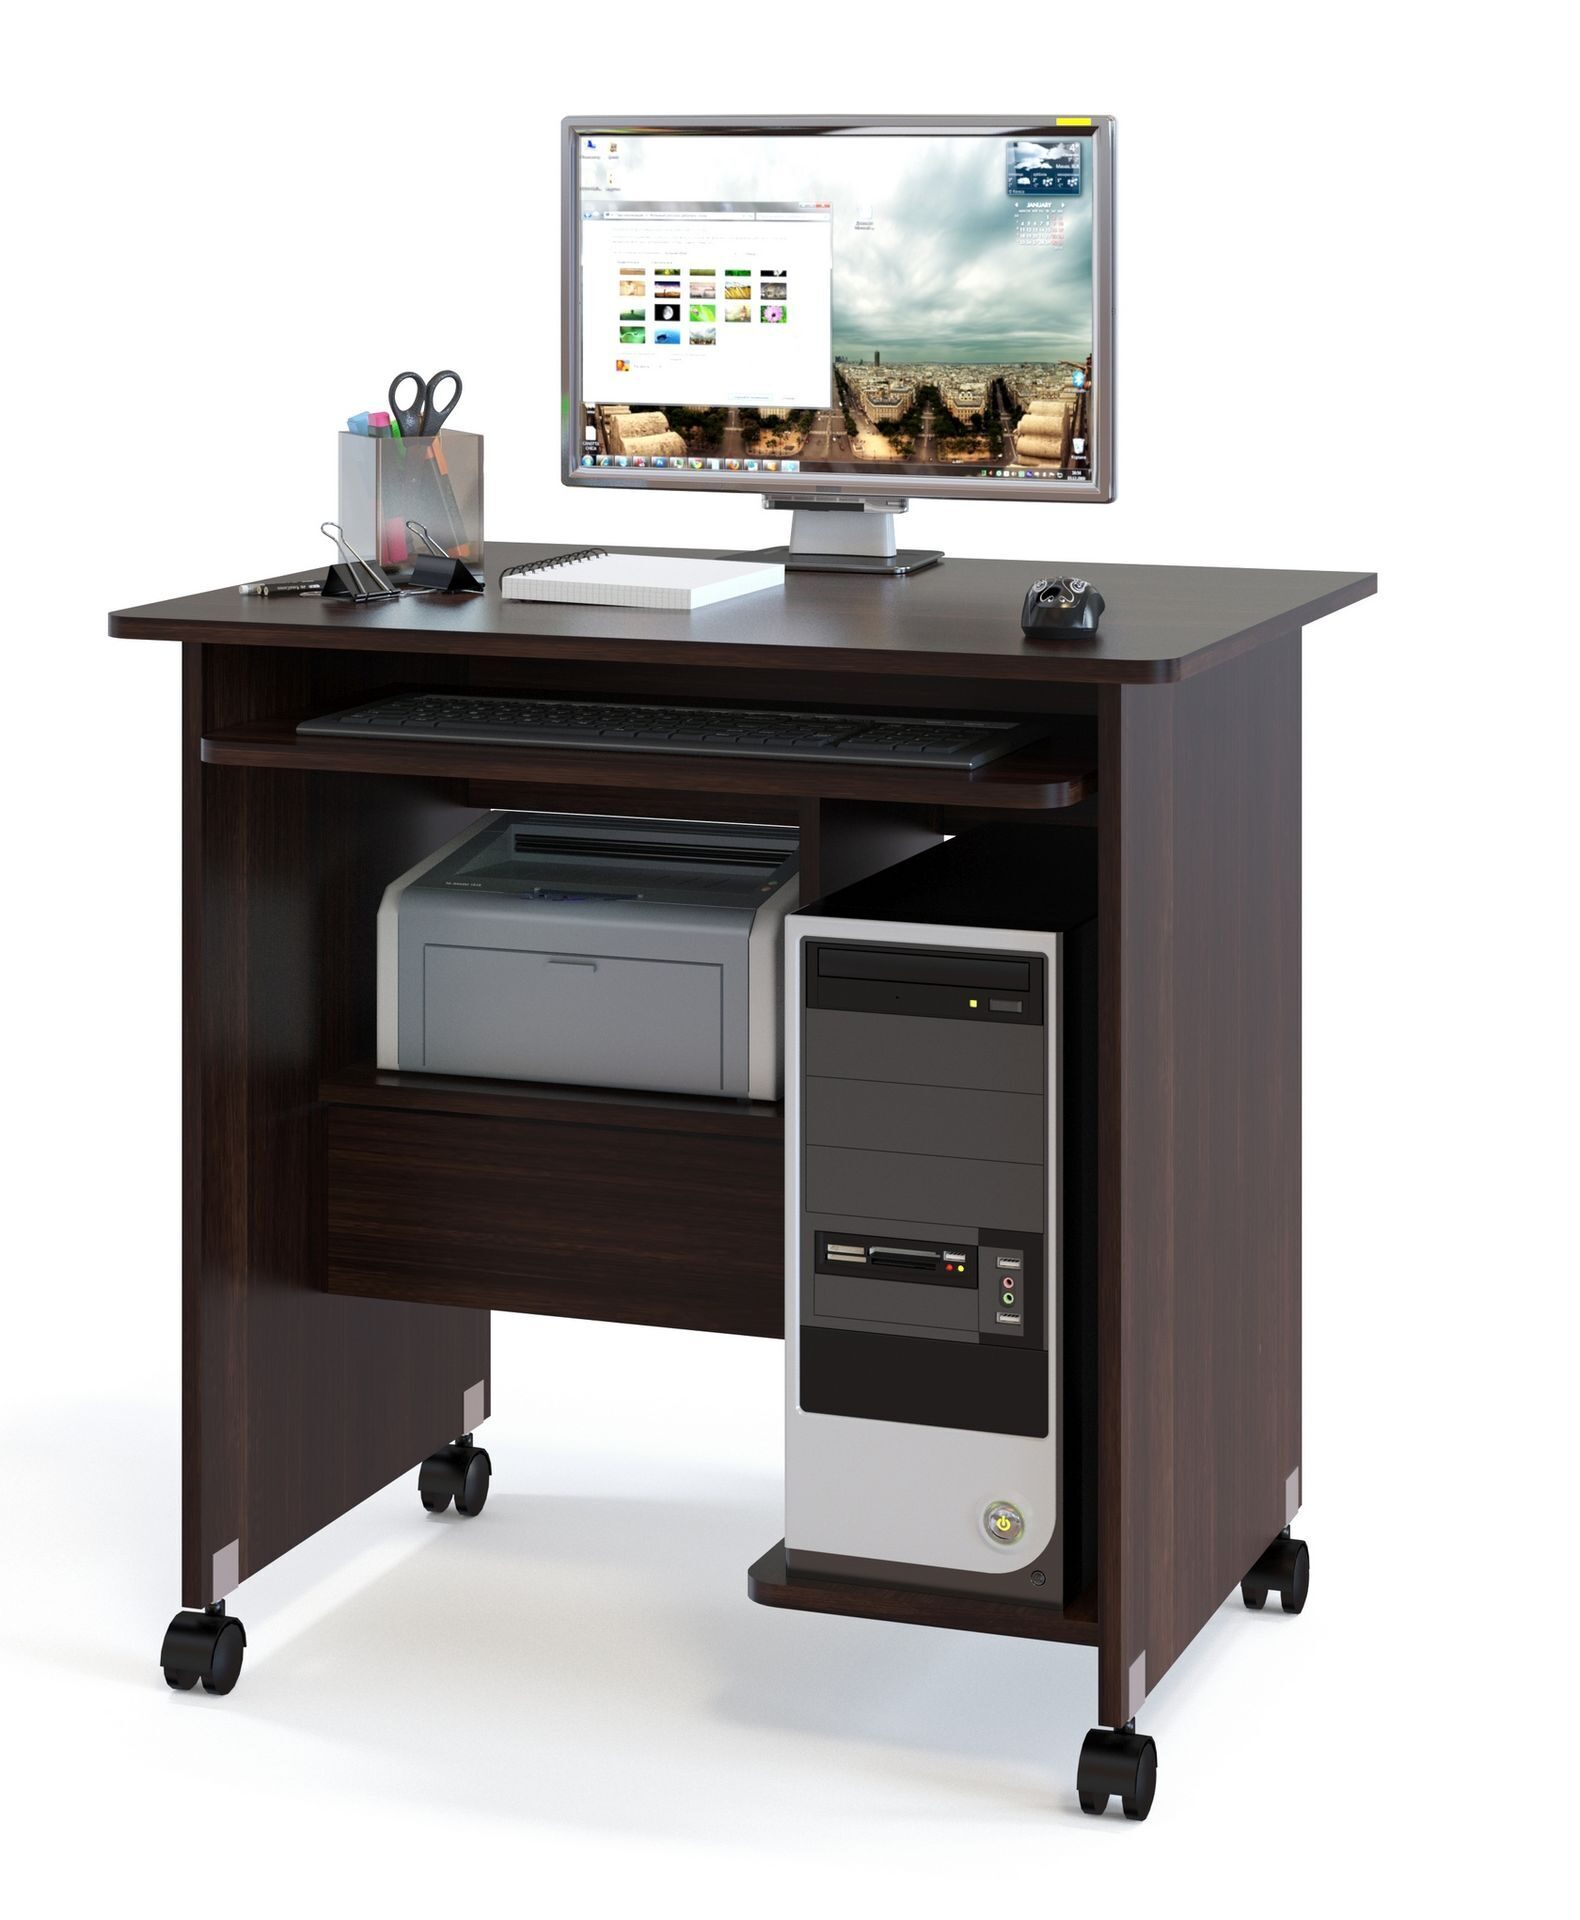 столик для компьютера и принтера маленький